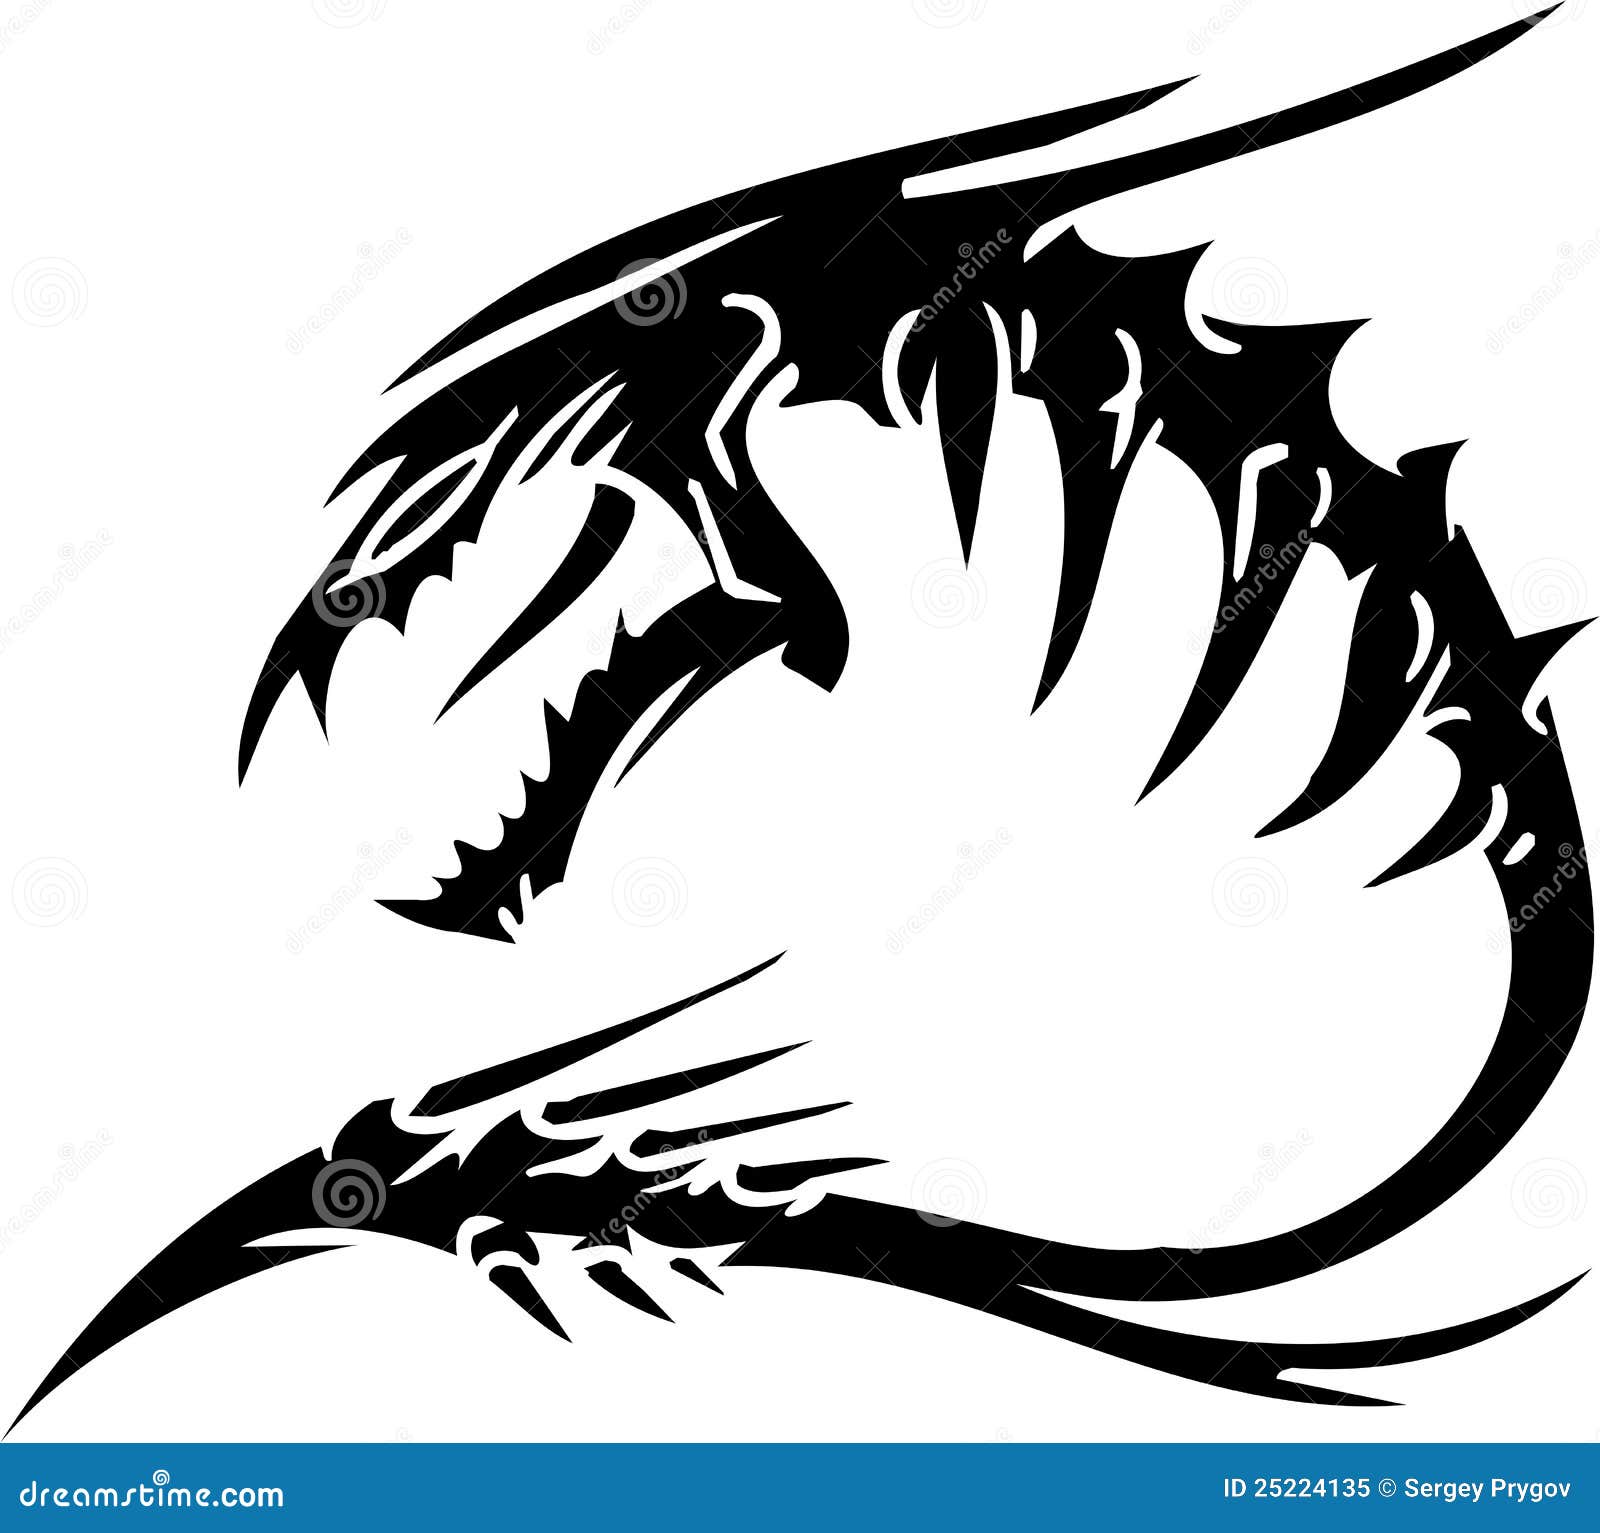 Sea Monster - Vector Illustration. Vinyl-ready. Stock Vector ...
 Sea Serpent Logo